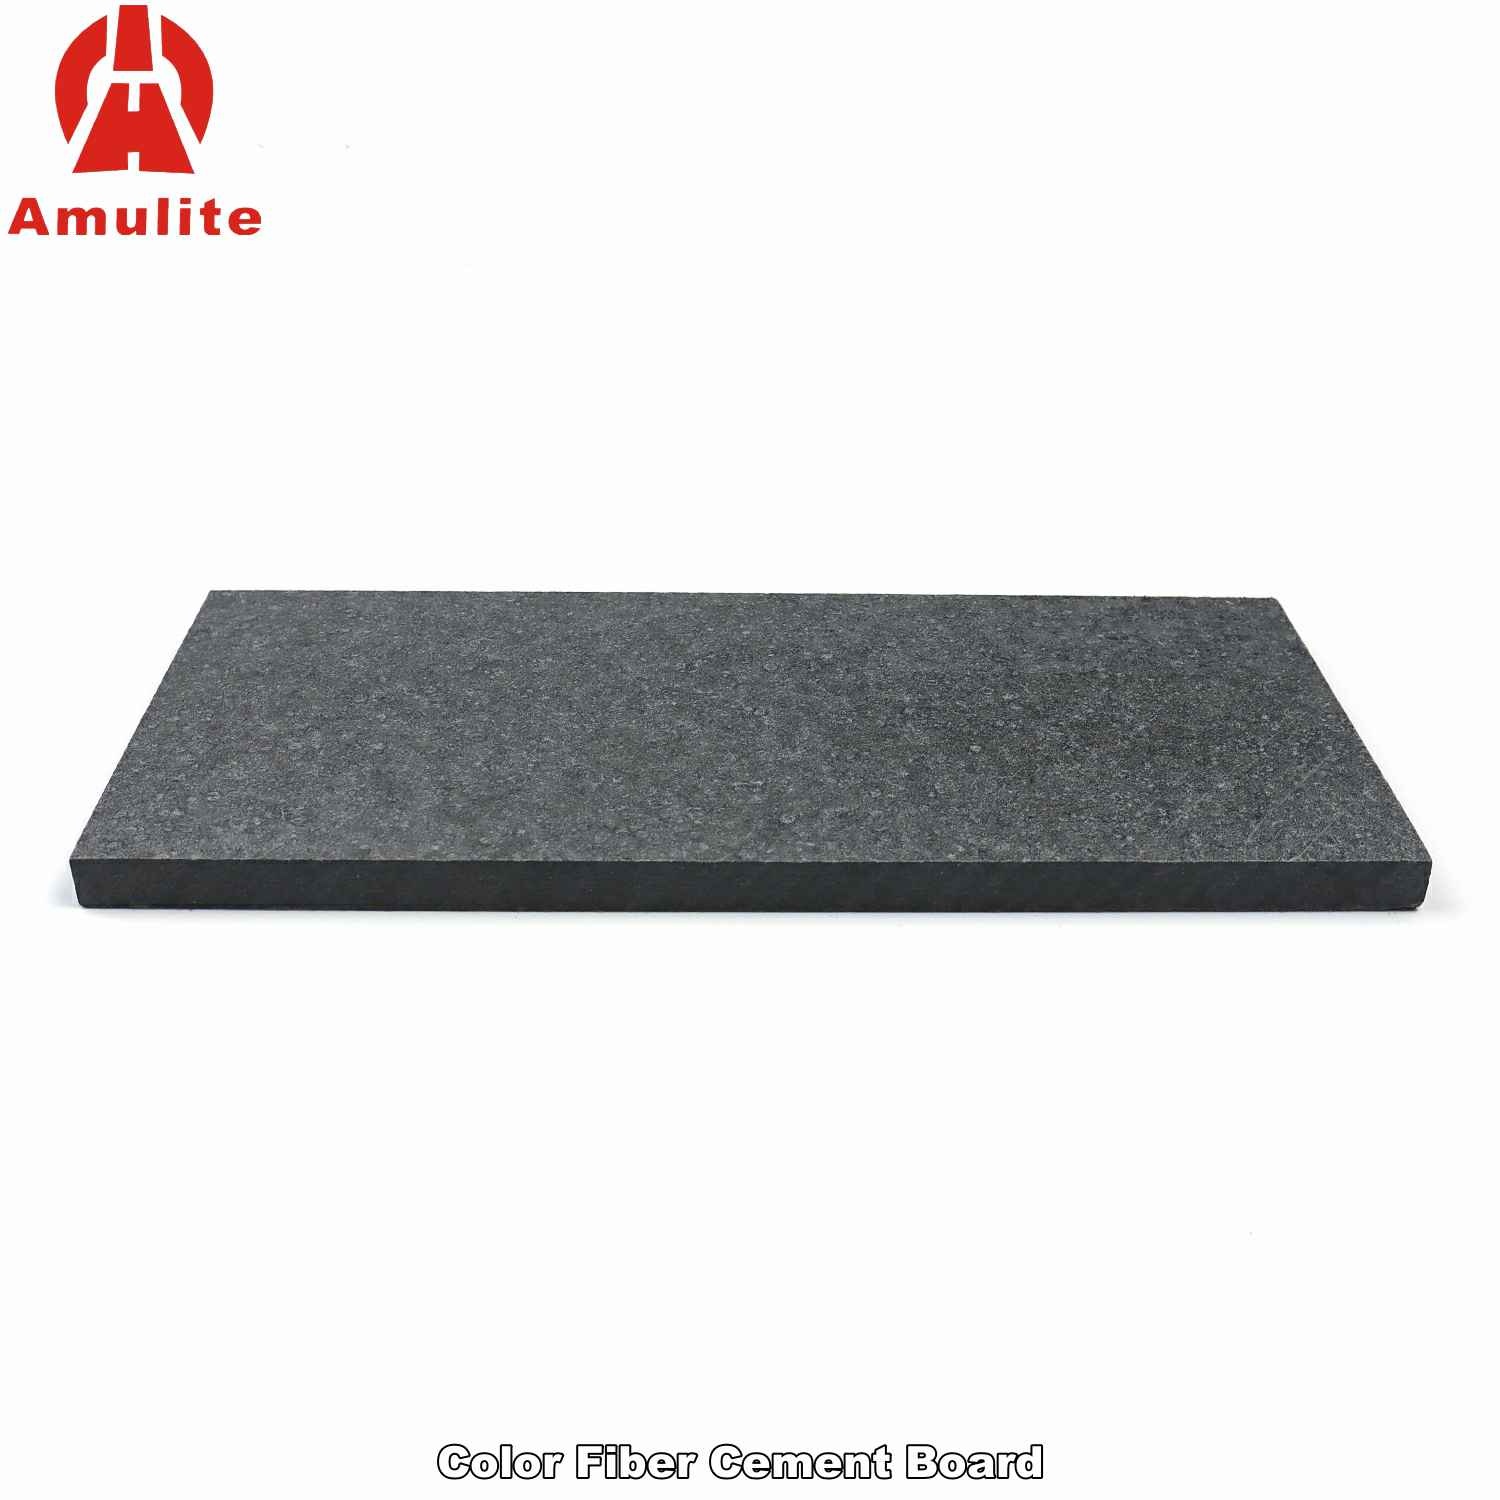 Color Fiber Cement Board (19)